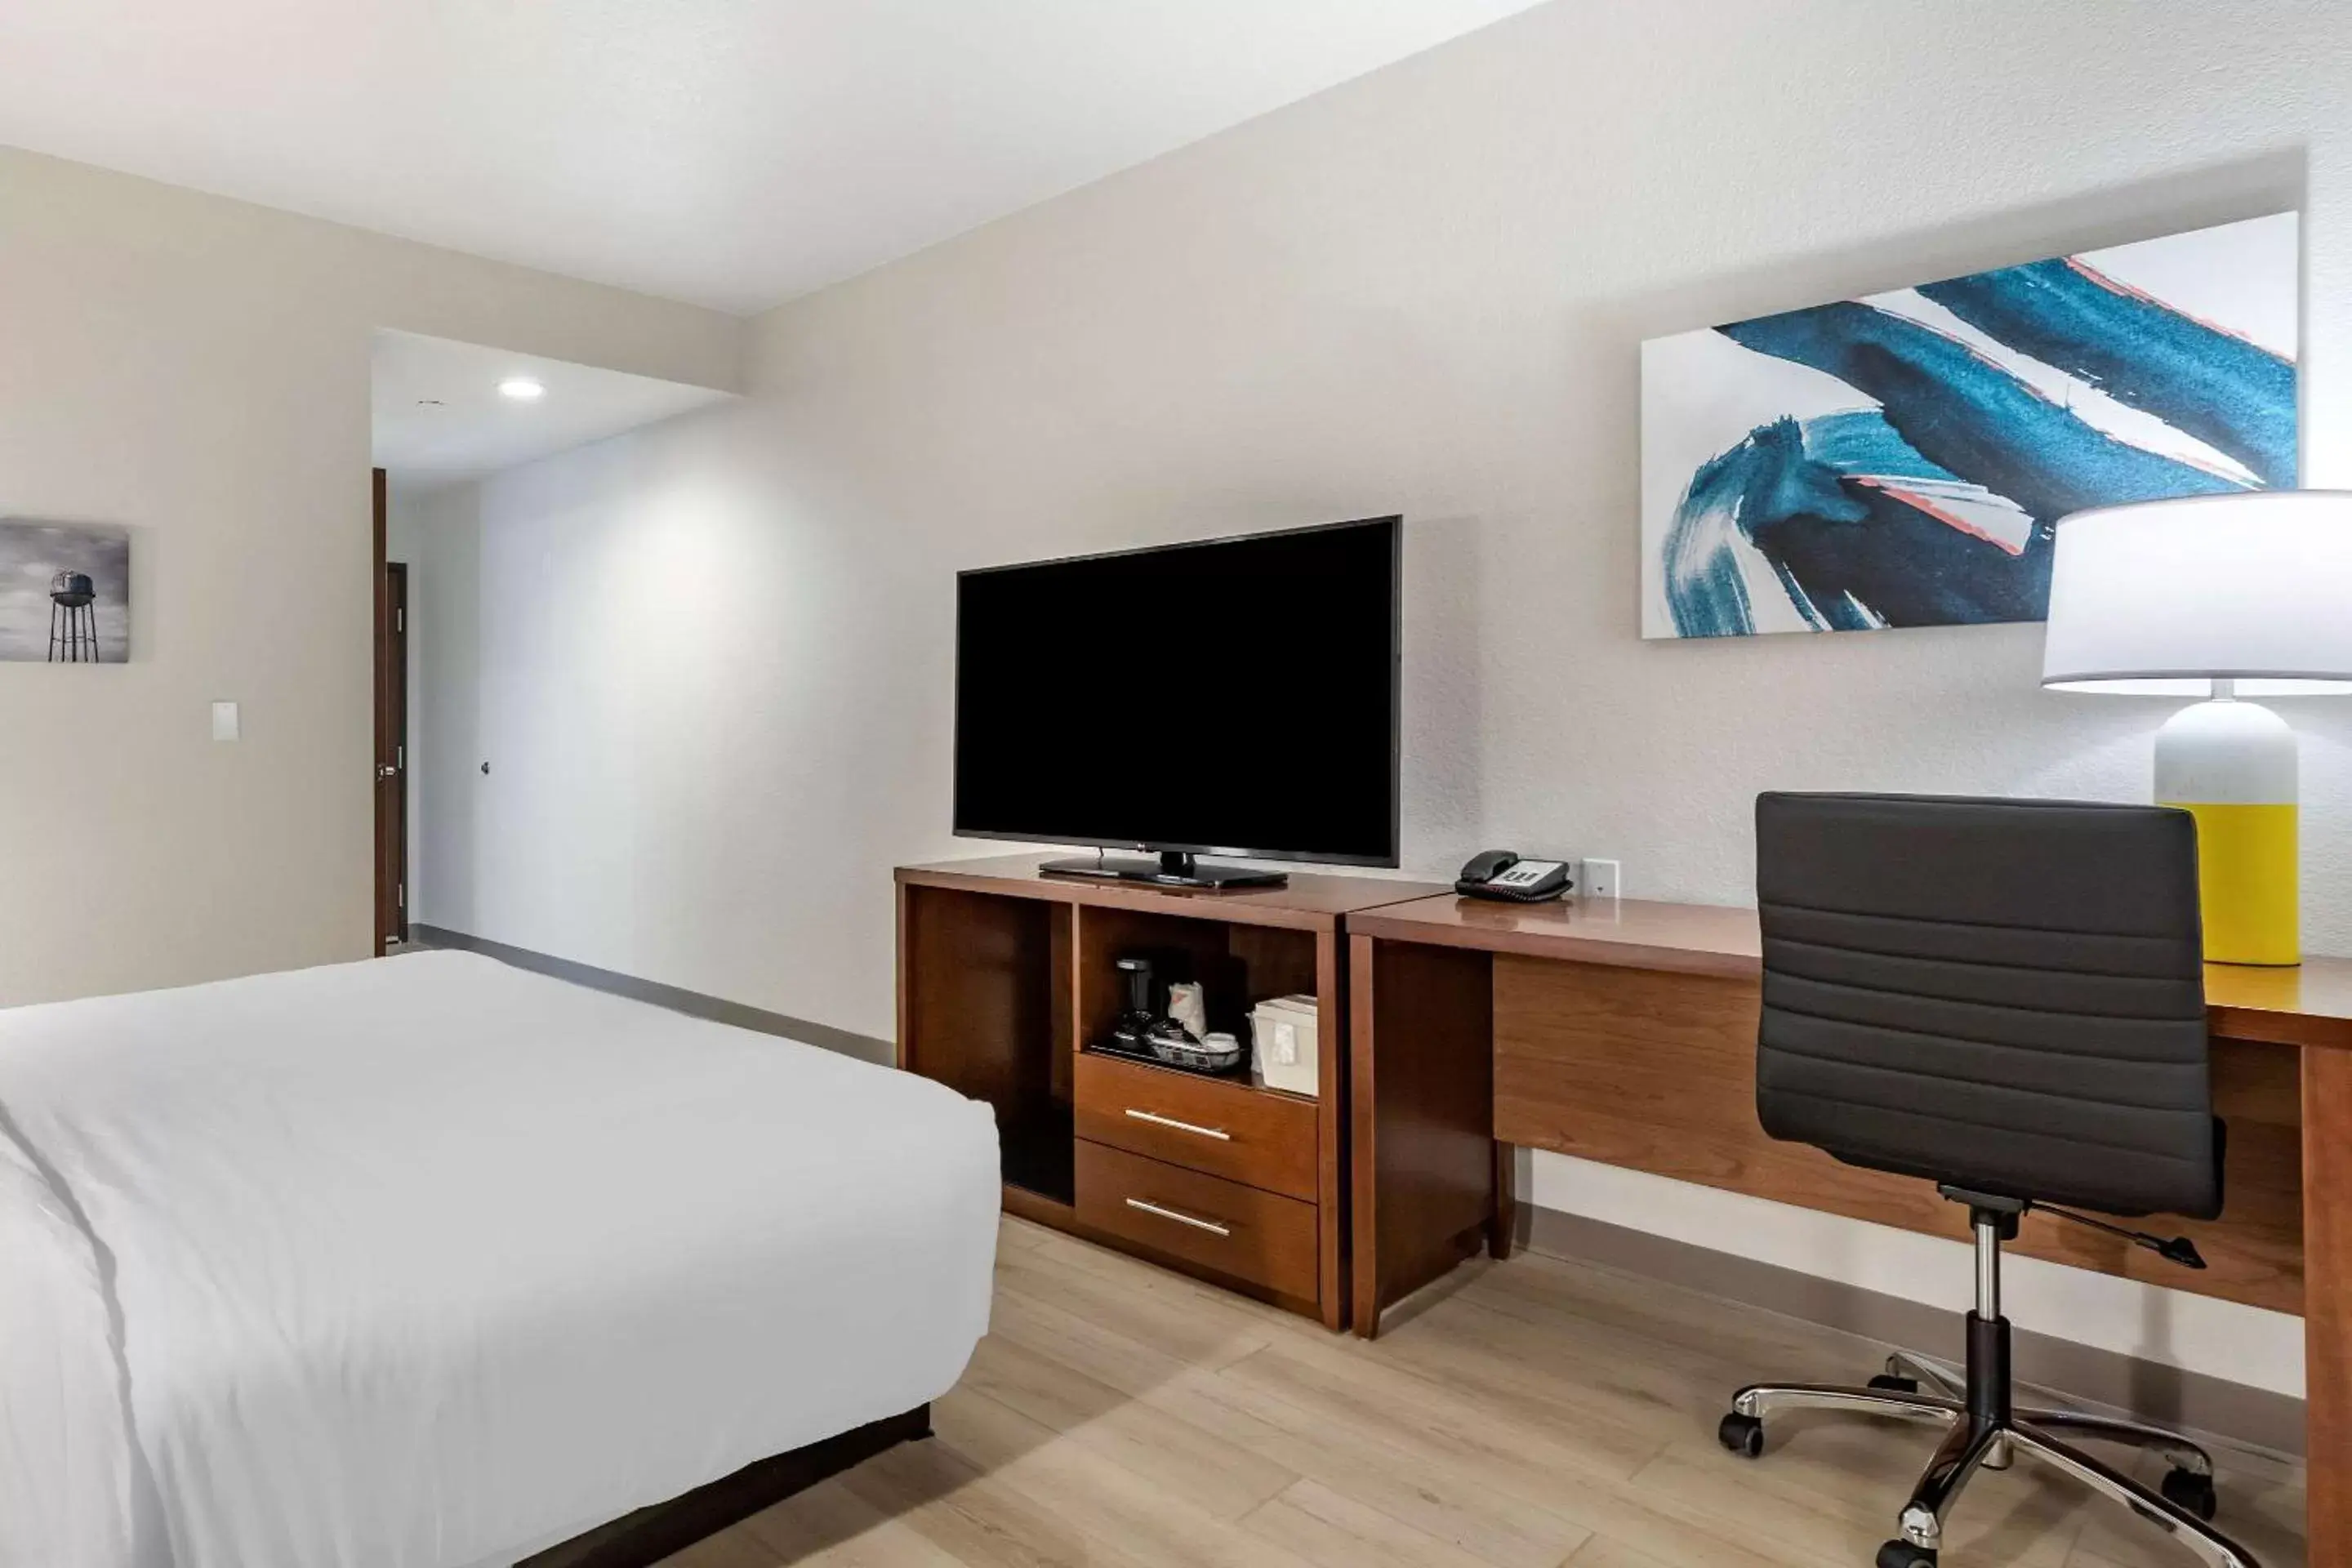 Bedroom, Bed in Comfort Inn & Suites Bennett